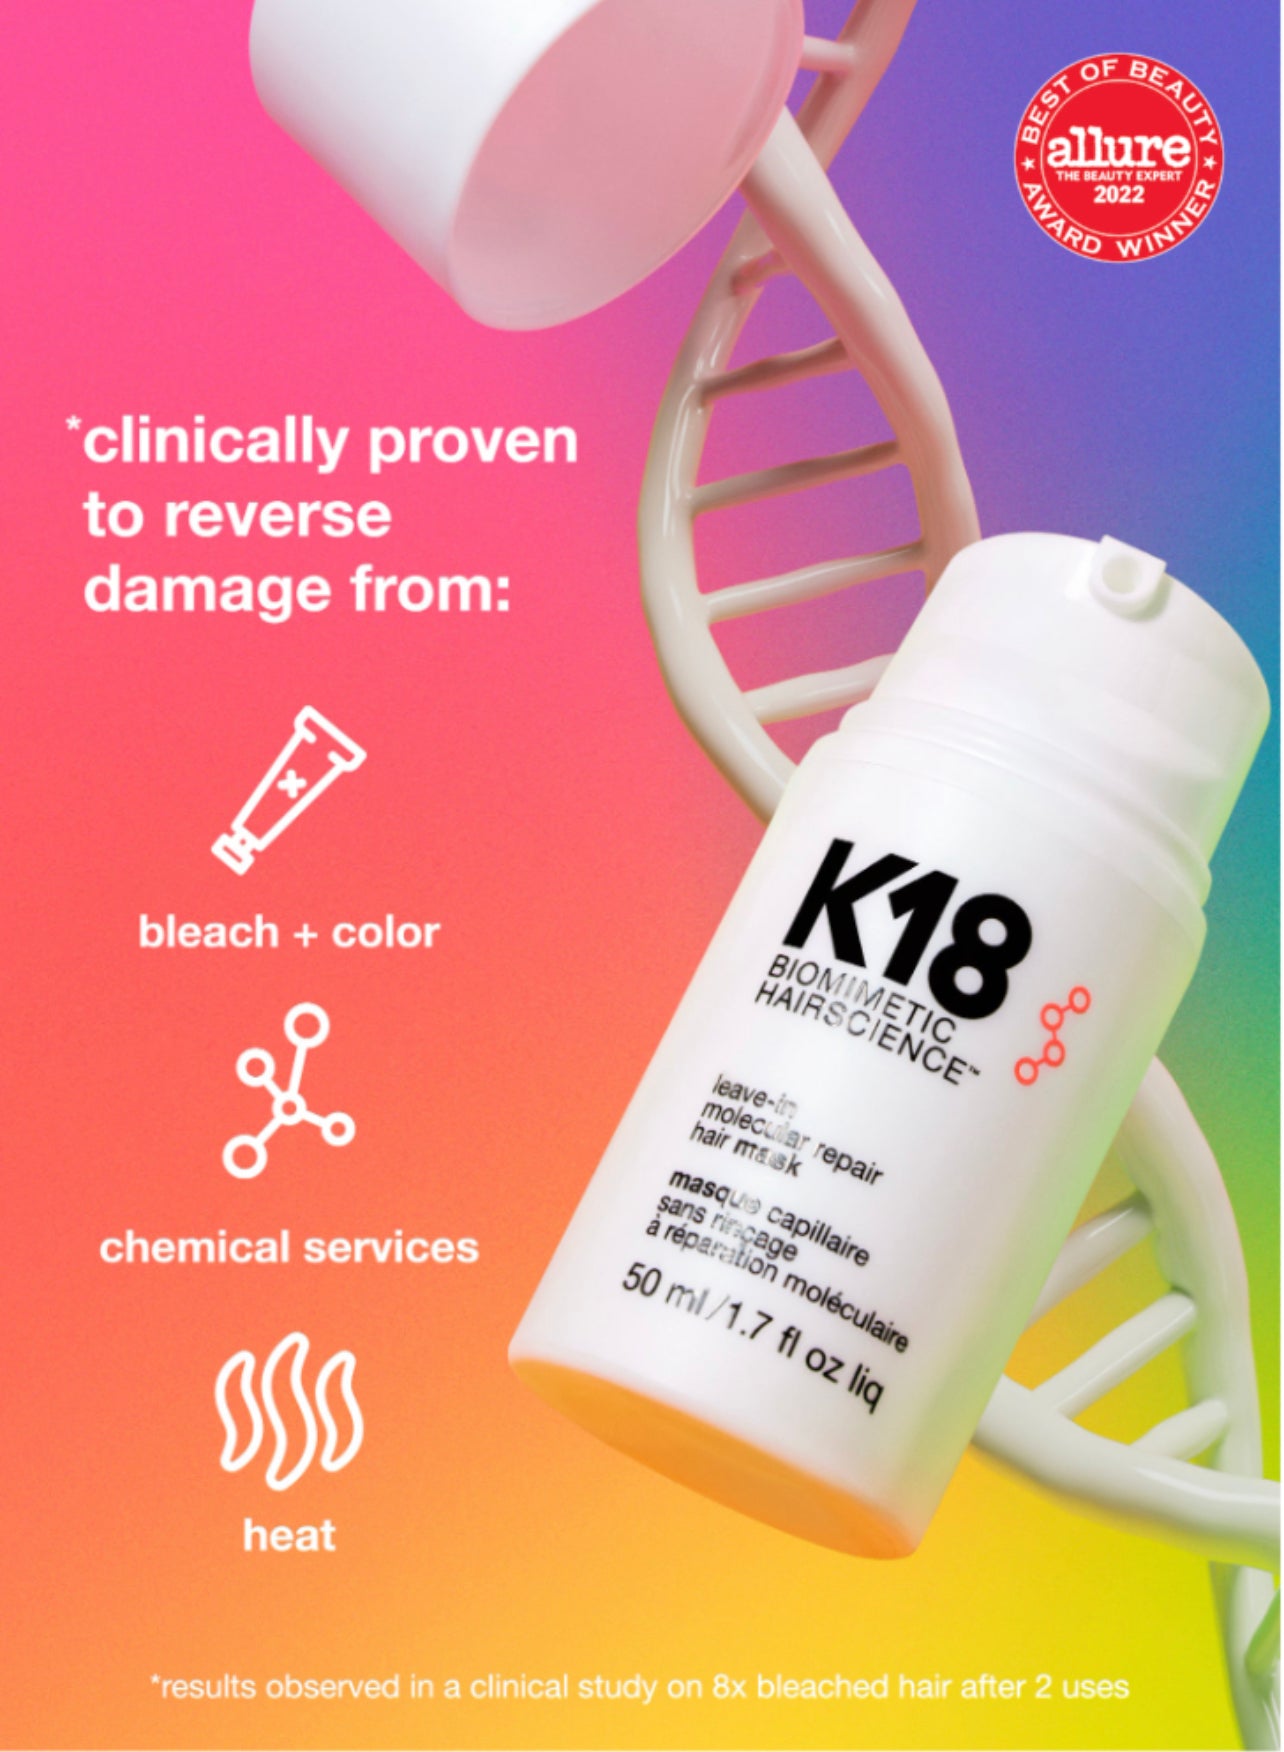 K18 Professional Repair hair mask 50ml